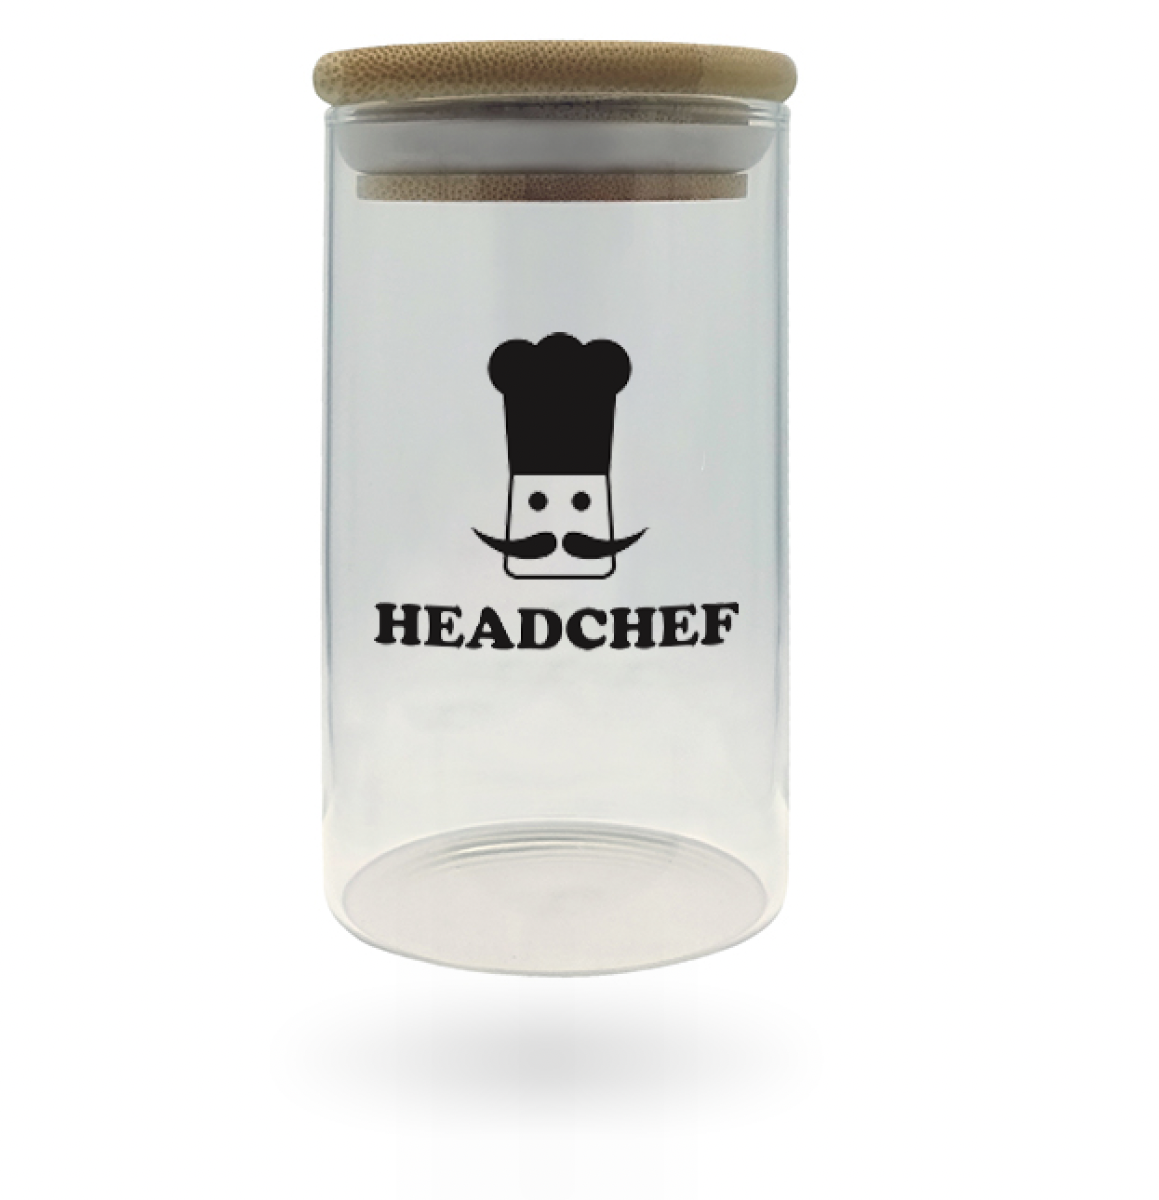 Headchef Glass Storage Jar